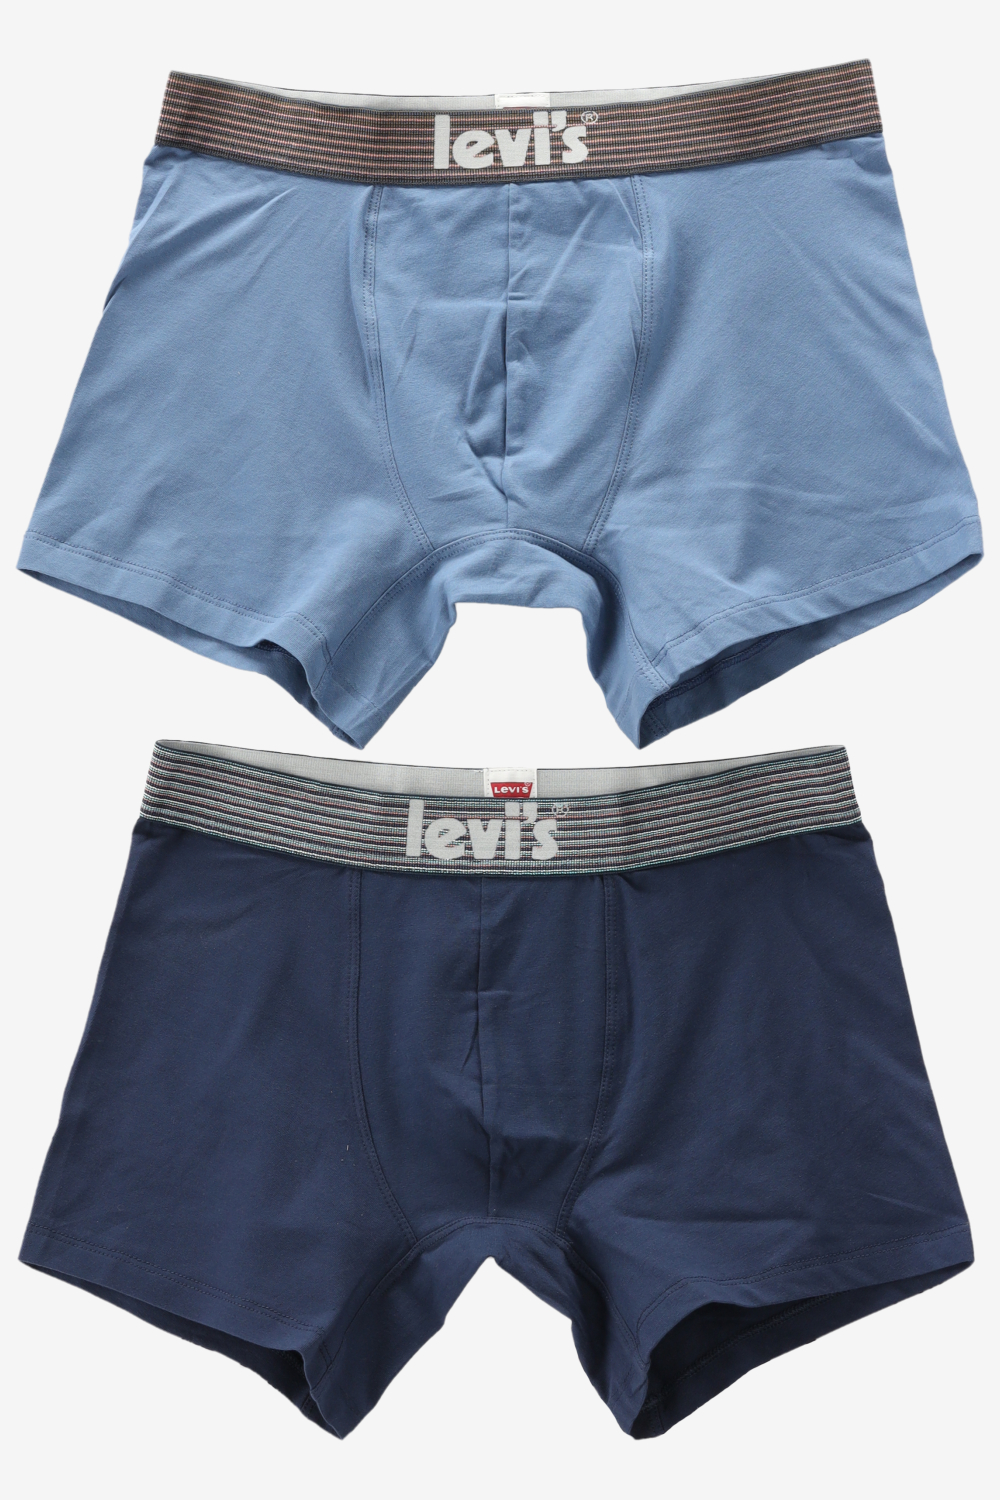 Levi's Underwear OFFBEAT STRIPE